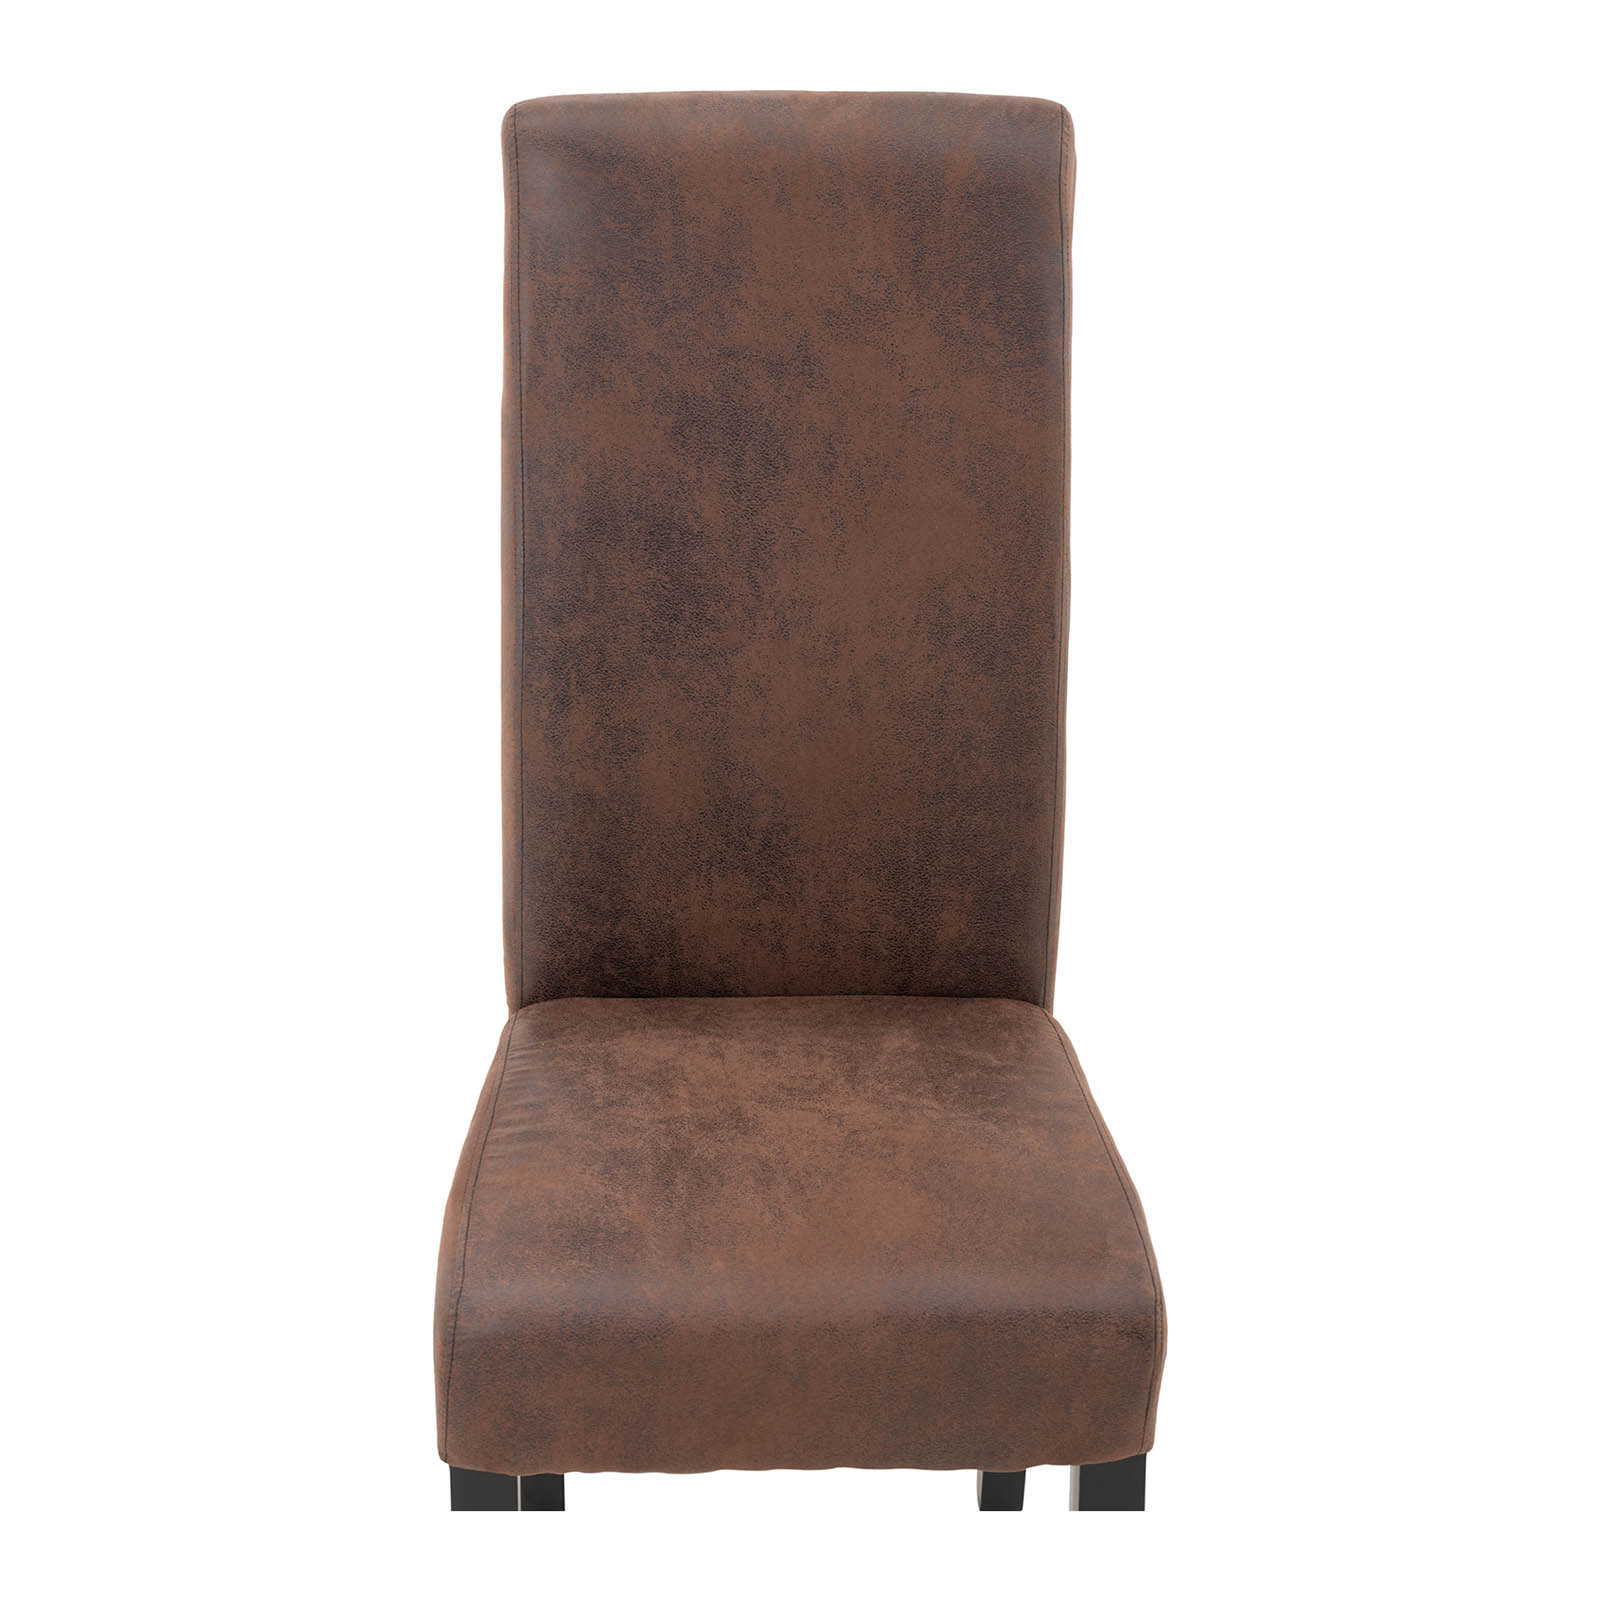 Chaise rembourrée - Lot de 2 - 180 kg max. - Surface d'assise de 44,5 x 44 cm - Coloris marron